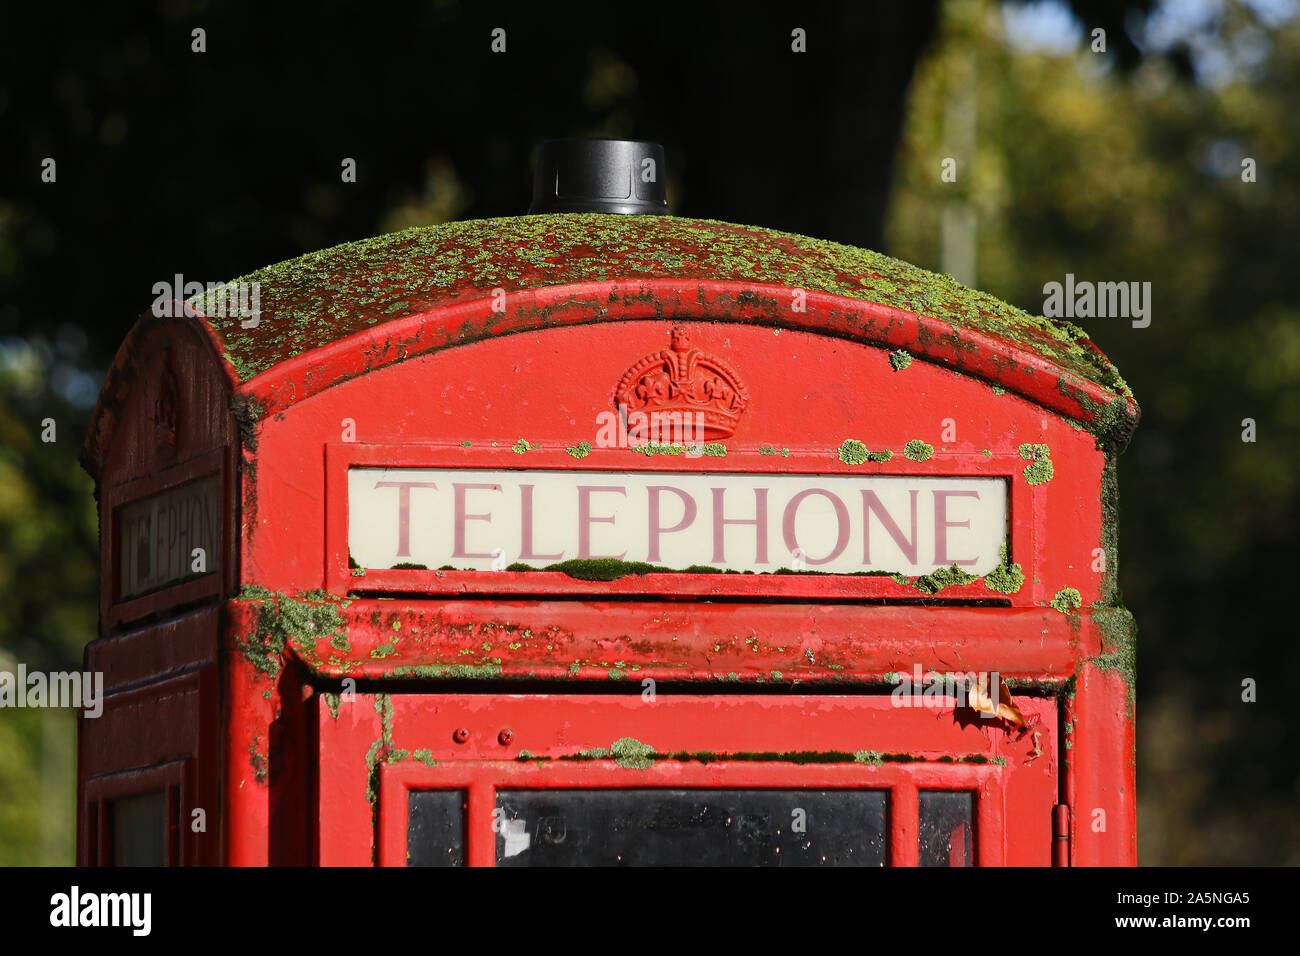 Traditionelle alte Britische Telefonzelle oder Telefonzelle mit der königlichen Krone Prägung auf es in Moos und Flechten bedeckt und abblätternde Farbe in Oxford, Großbritannien Stockfoto